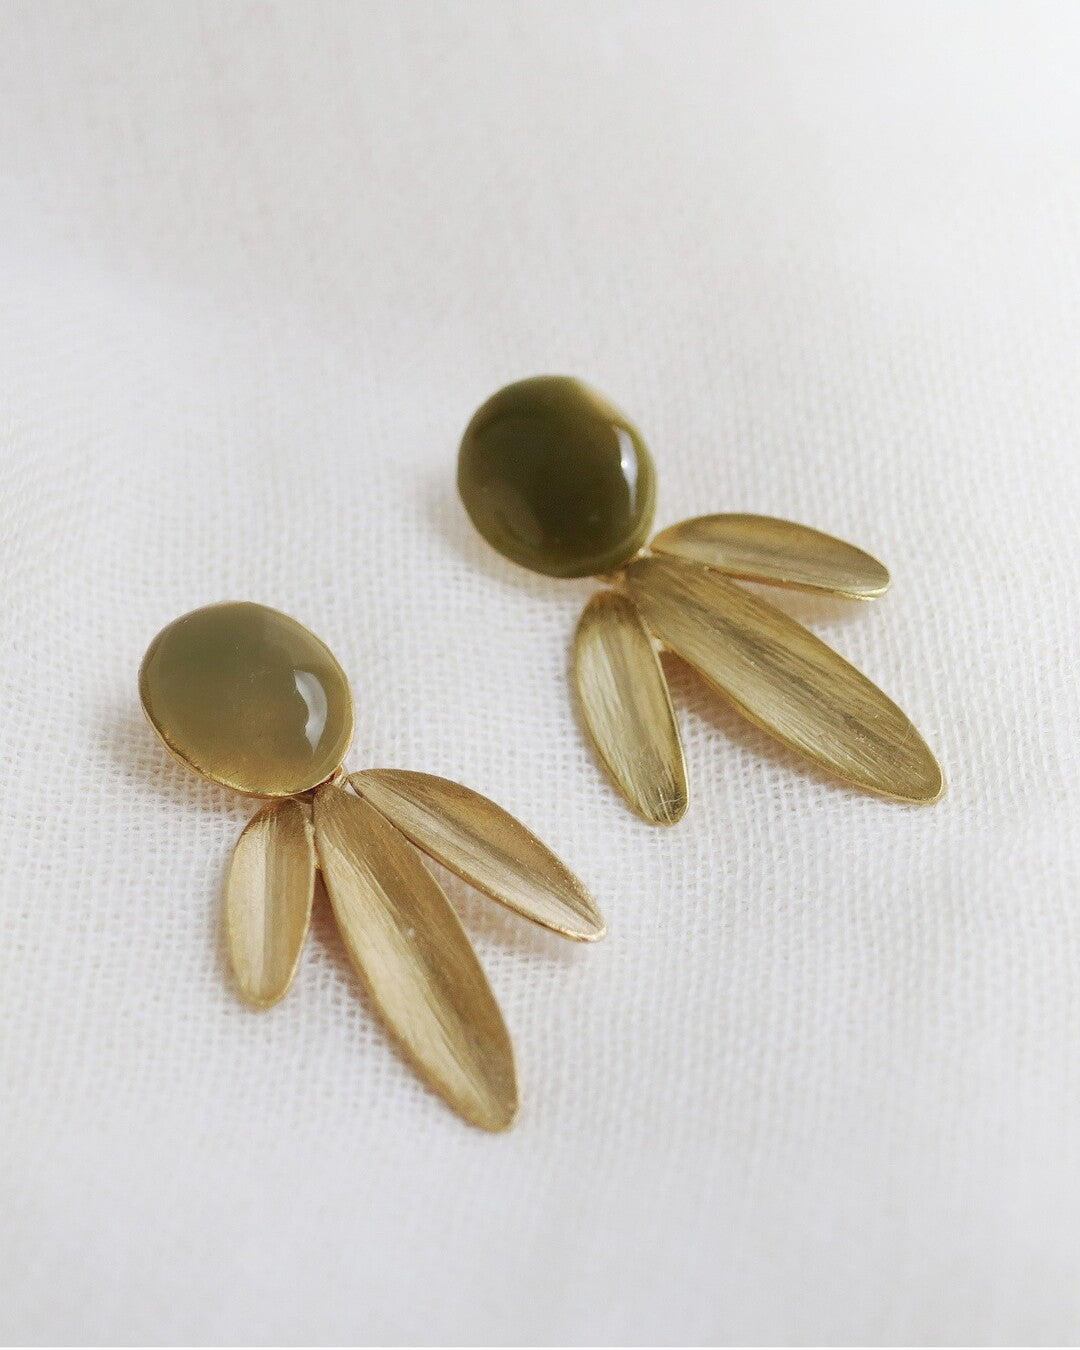 Handmade golden and enameled earrings - Joidart